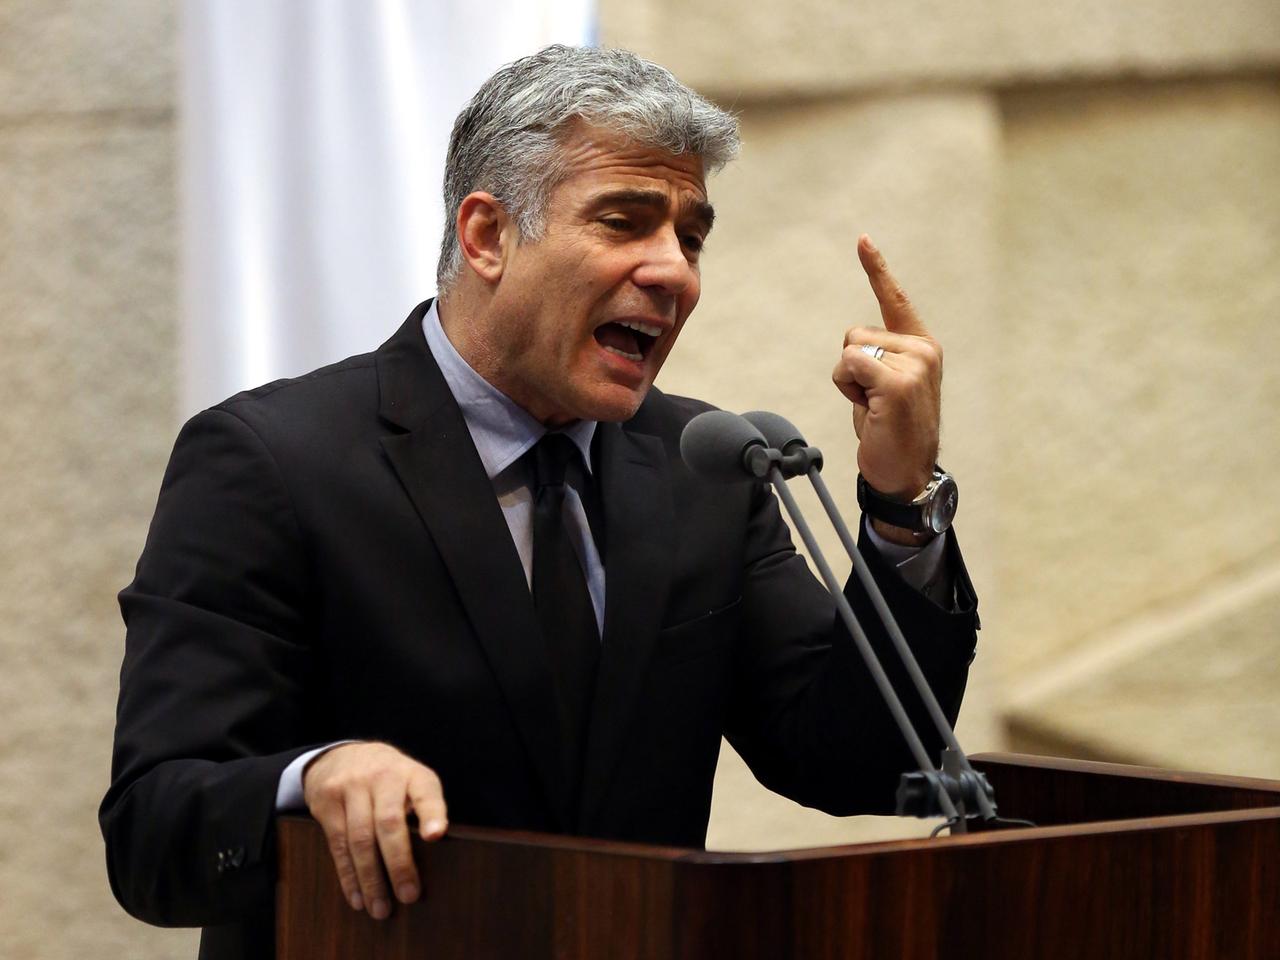 Israels Finanzminister Yair Lapid (Partei Yesh Atid) sprechend und gestikulierend an einem Rednerpult.